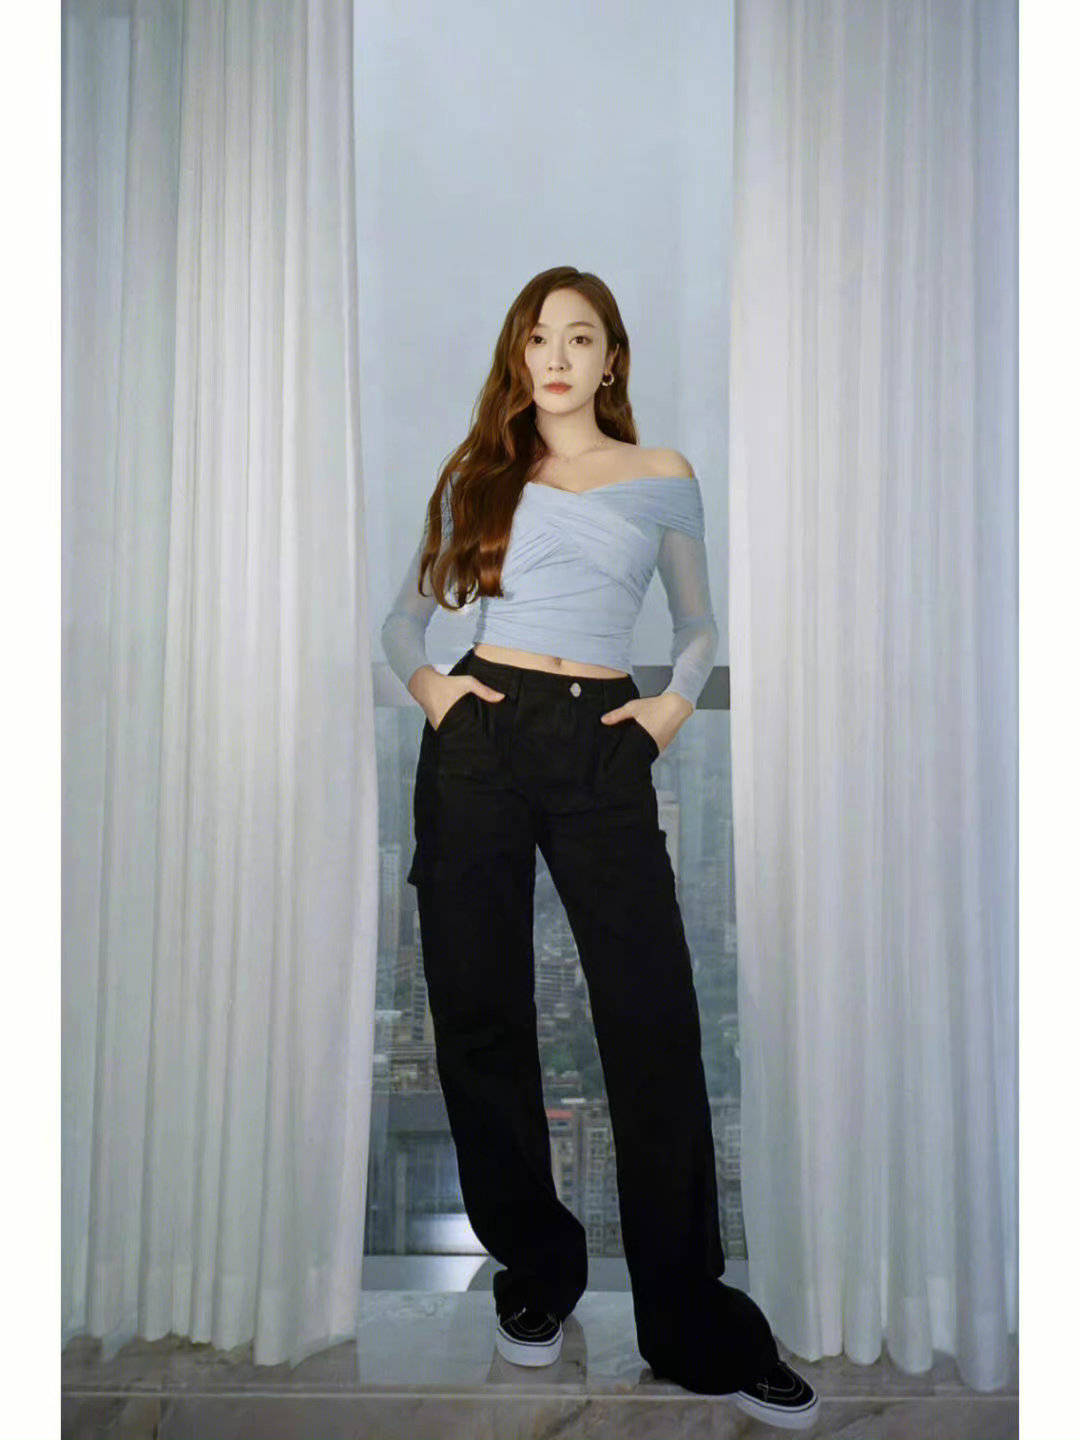 Jessica郑秀妍晒《浪姐3》舞台照，变身牛仔女郎，华丽美貌吸睛 - 哔哩哔哩